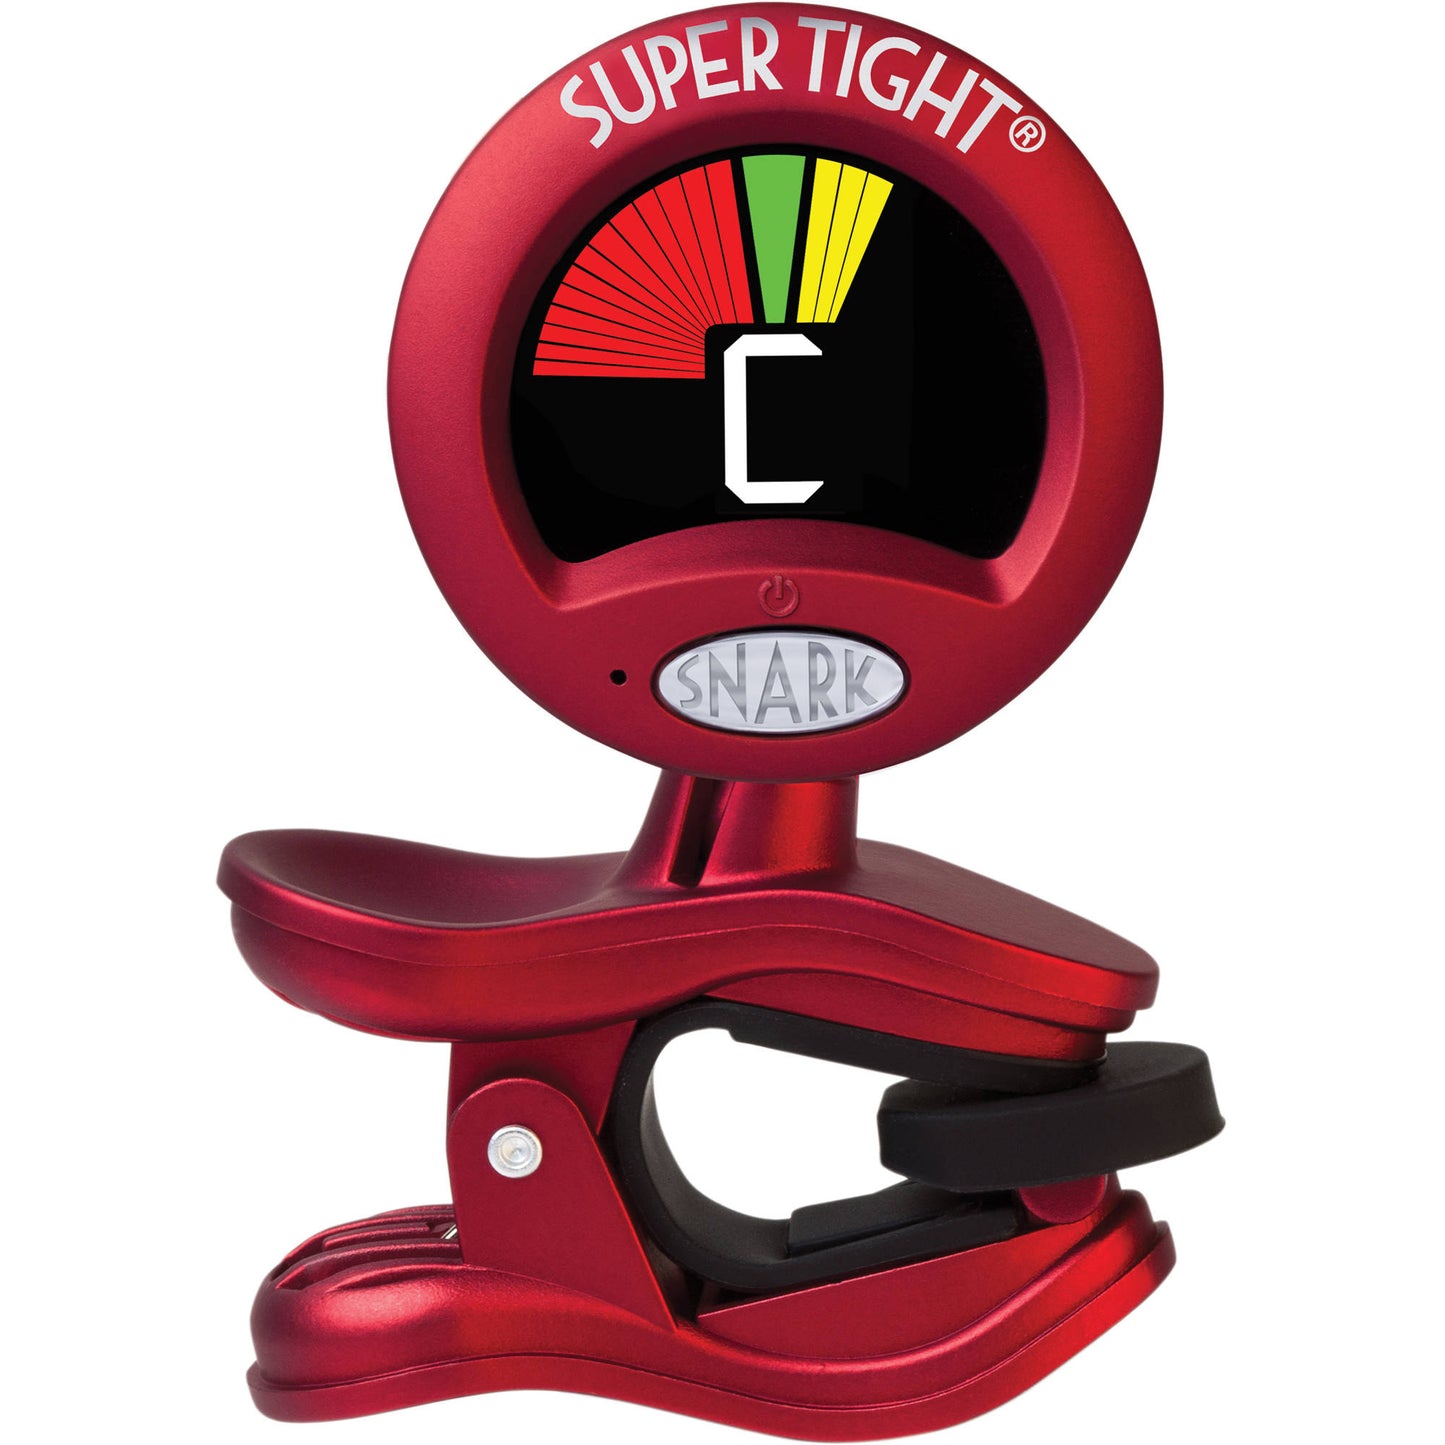 Snark Super Tight Clip-On Tuner